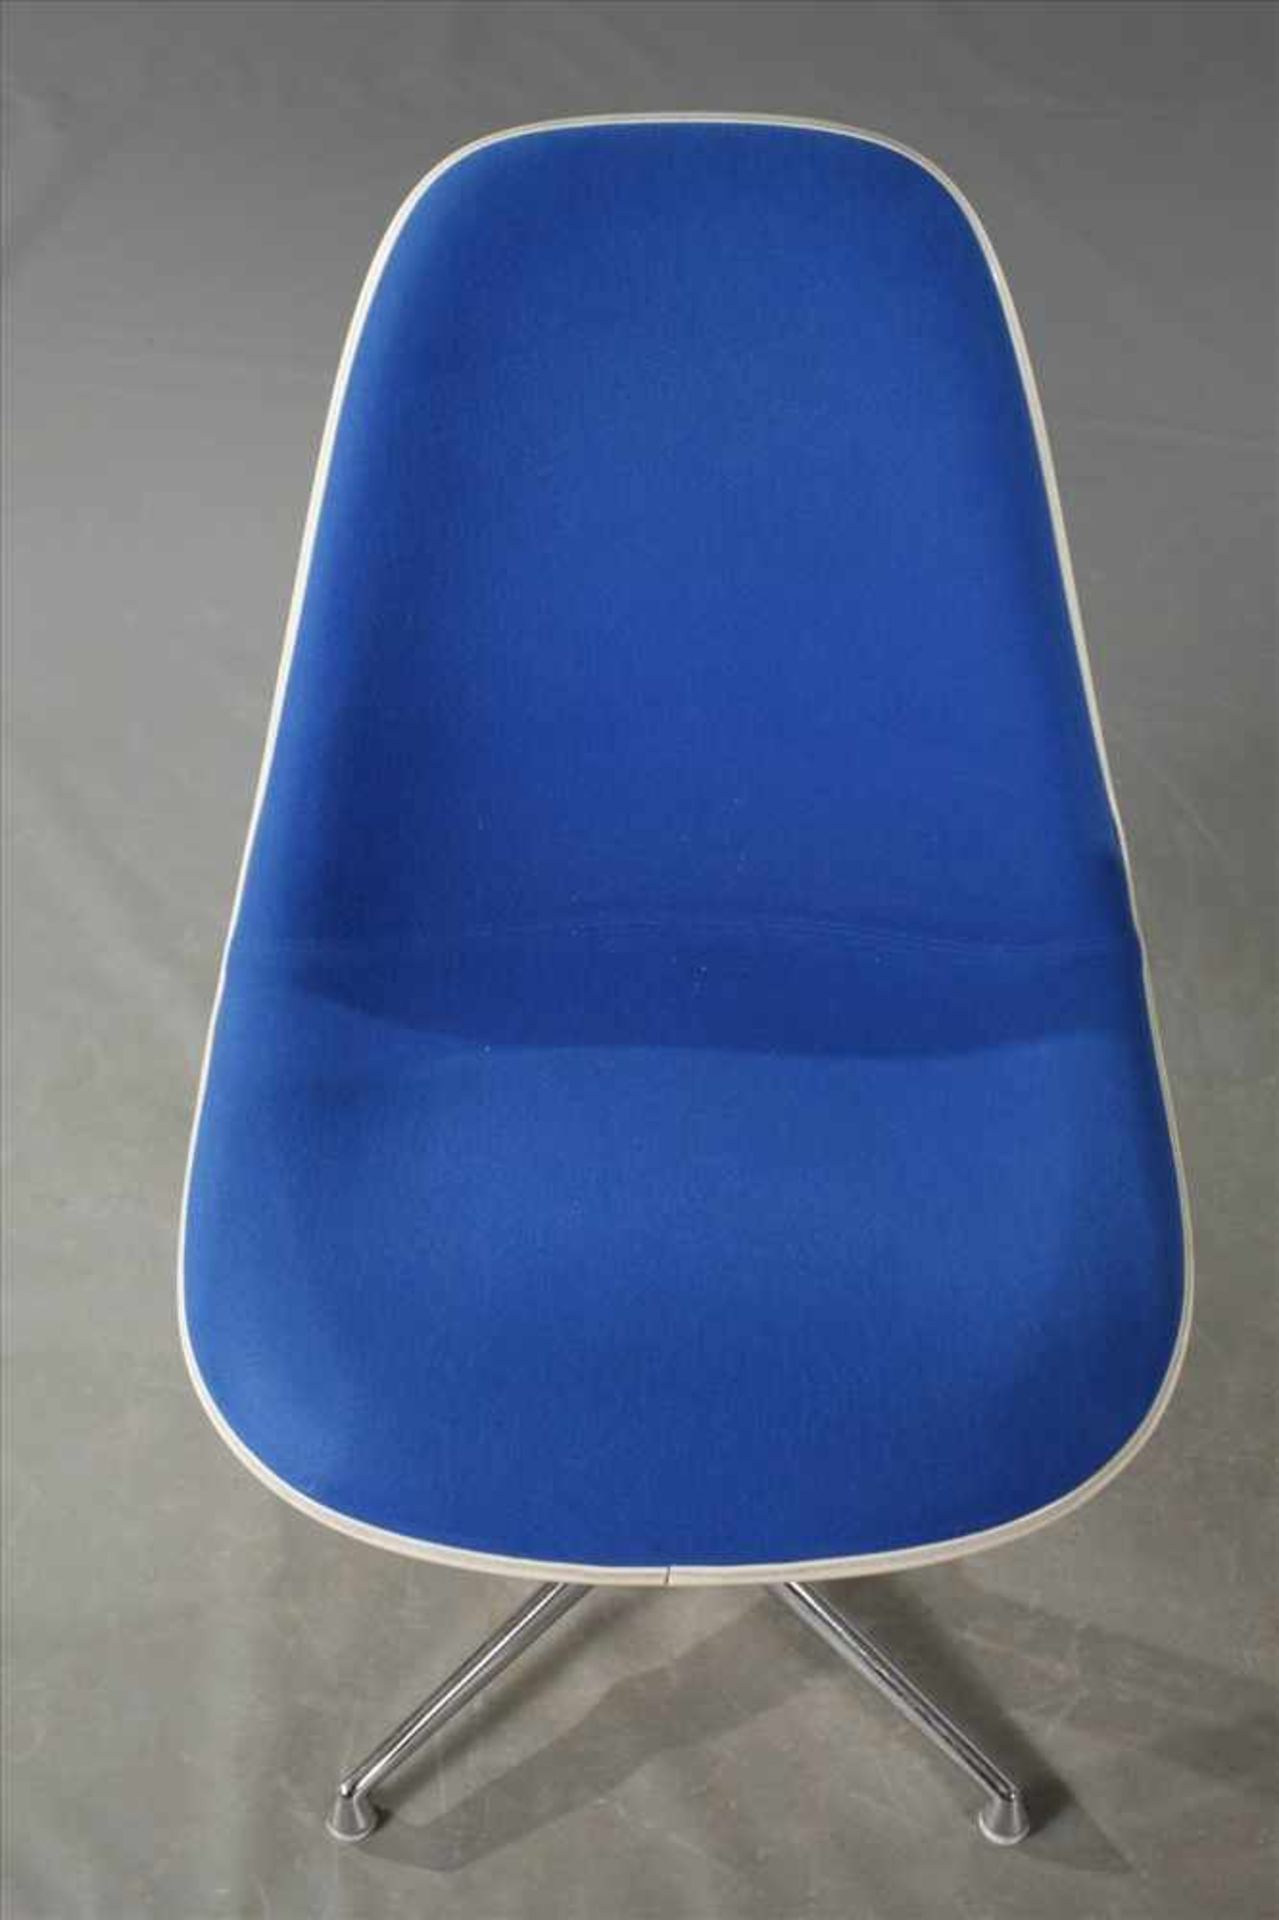 Vier Stühle "Lafonda" Charles & Ray Eames Entwurf 1961, Herstellung Vitra Weil am Rhein, Sitzschalen - Bild 2 aus 7